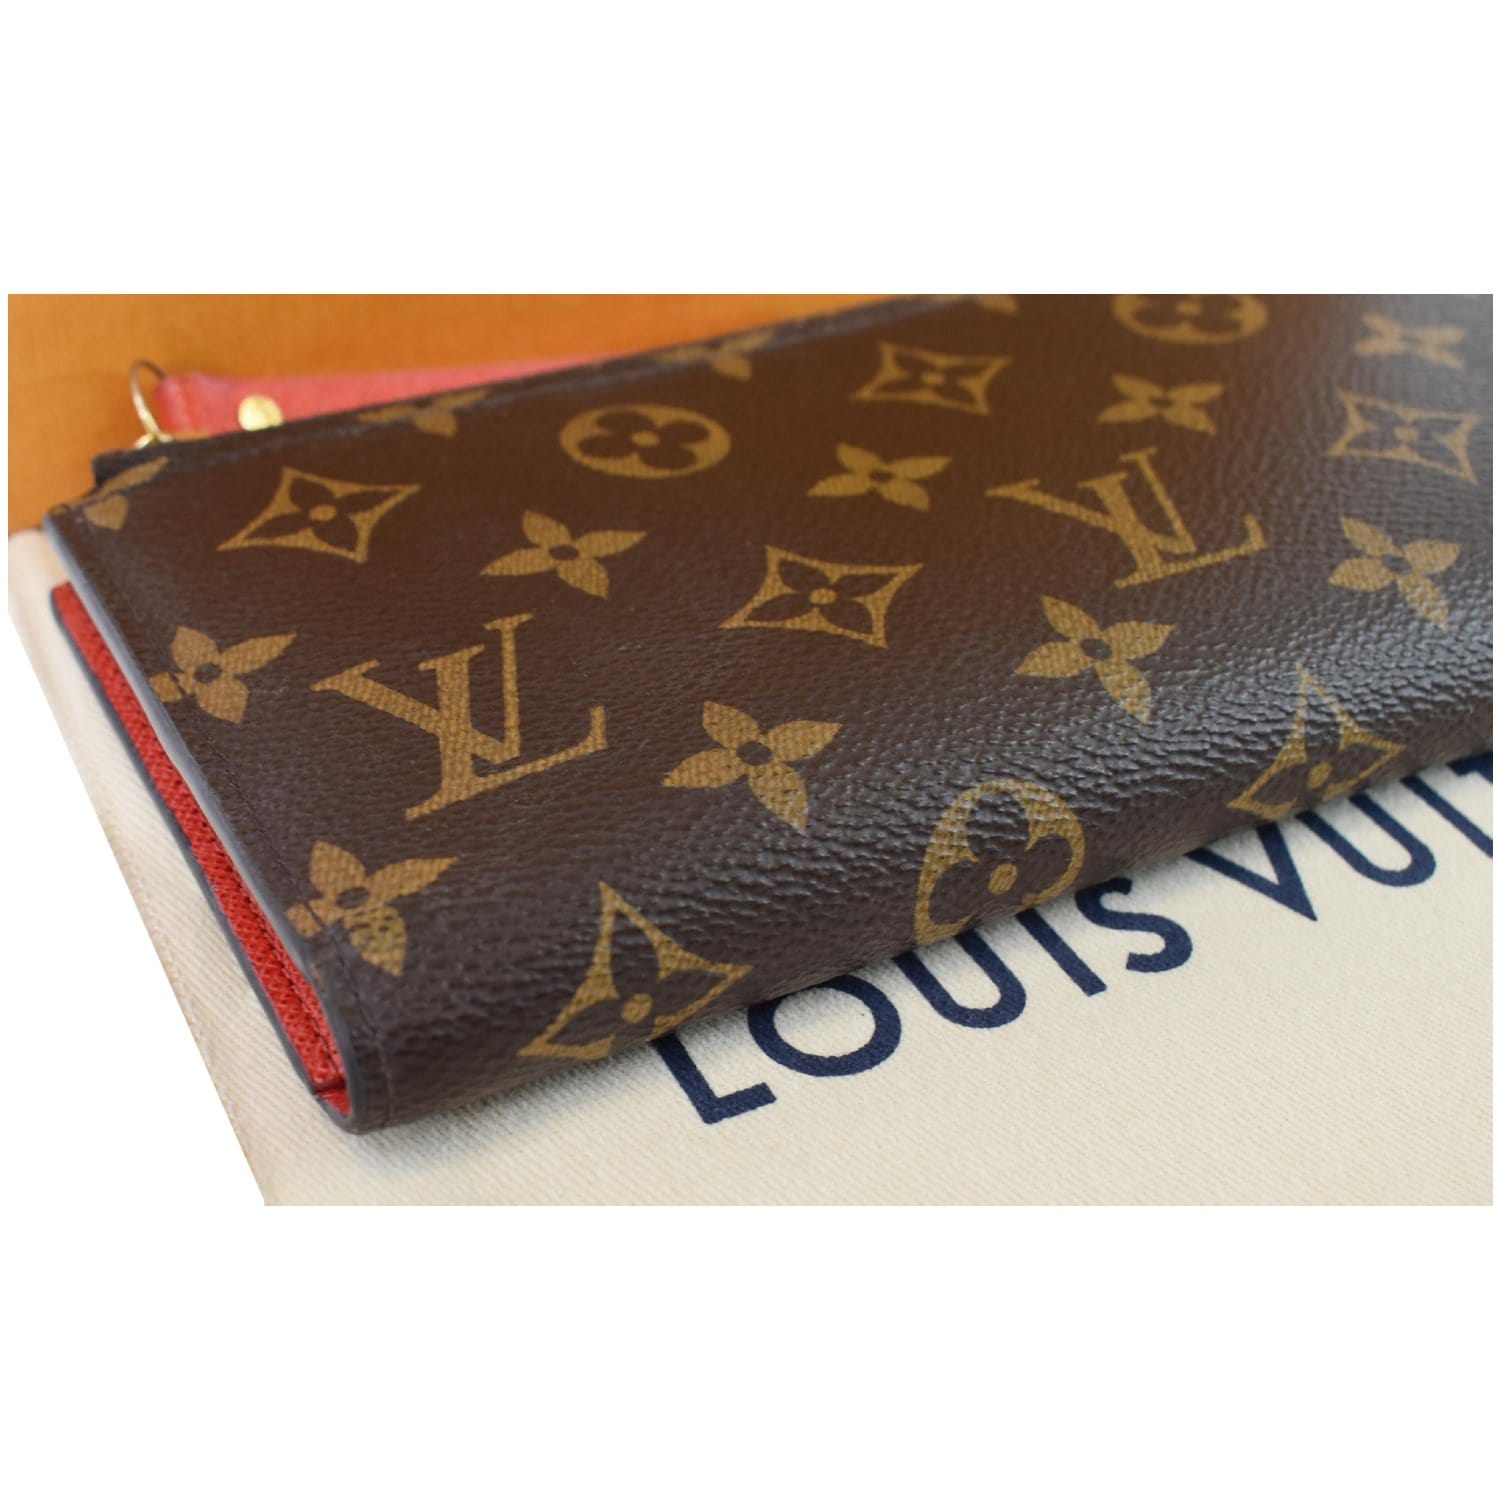 Shopbop Archive Louis Vuitton Adele Wallet, Monogram